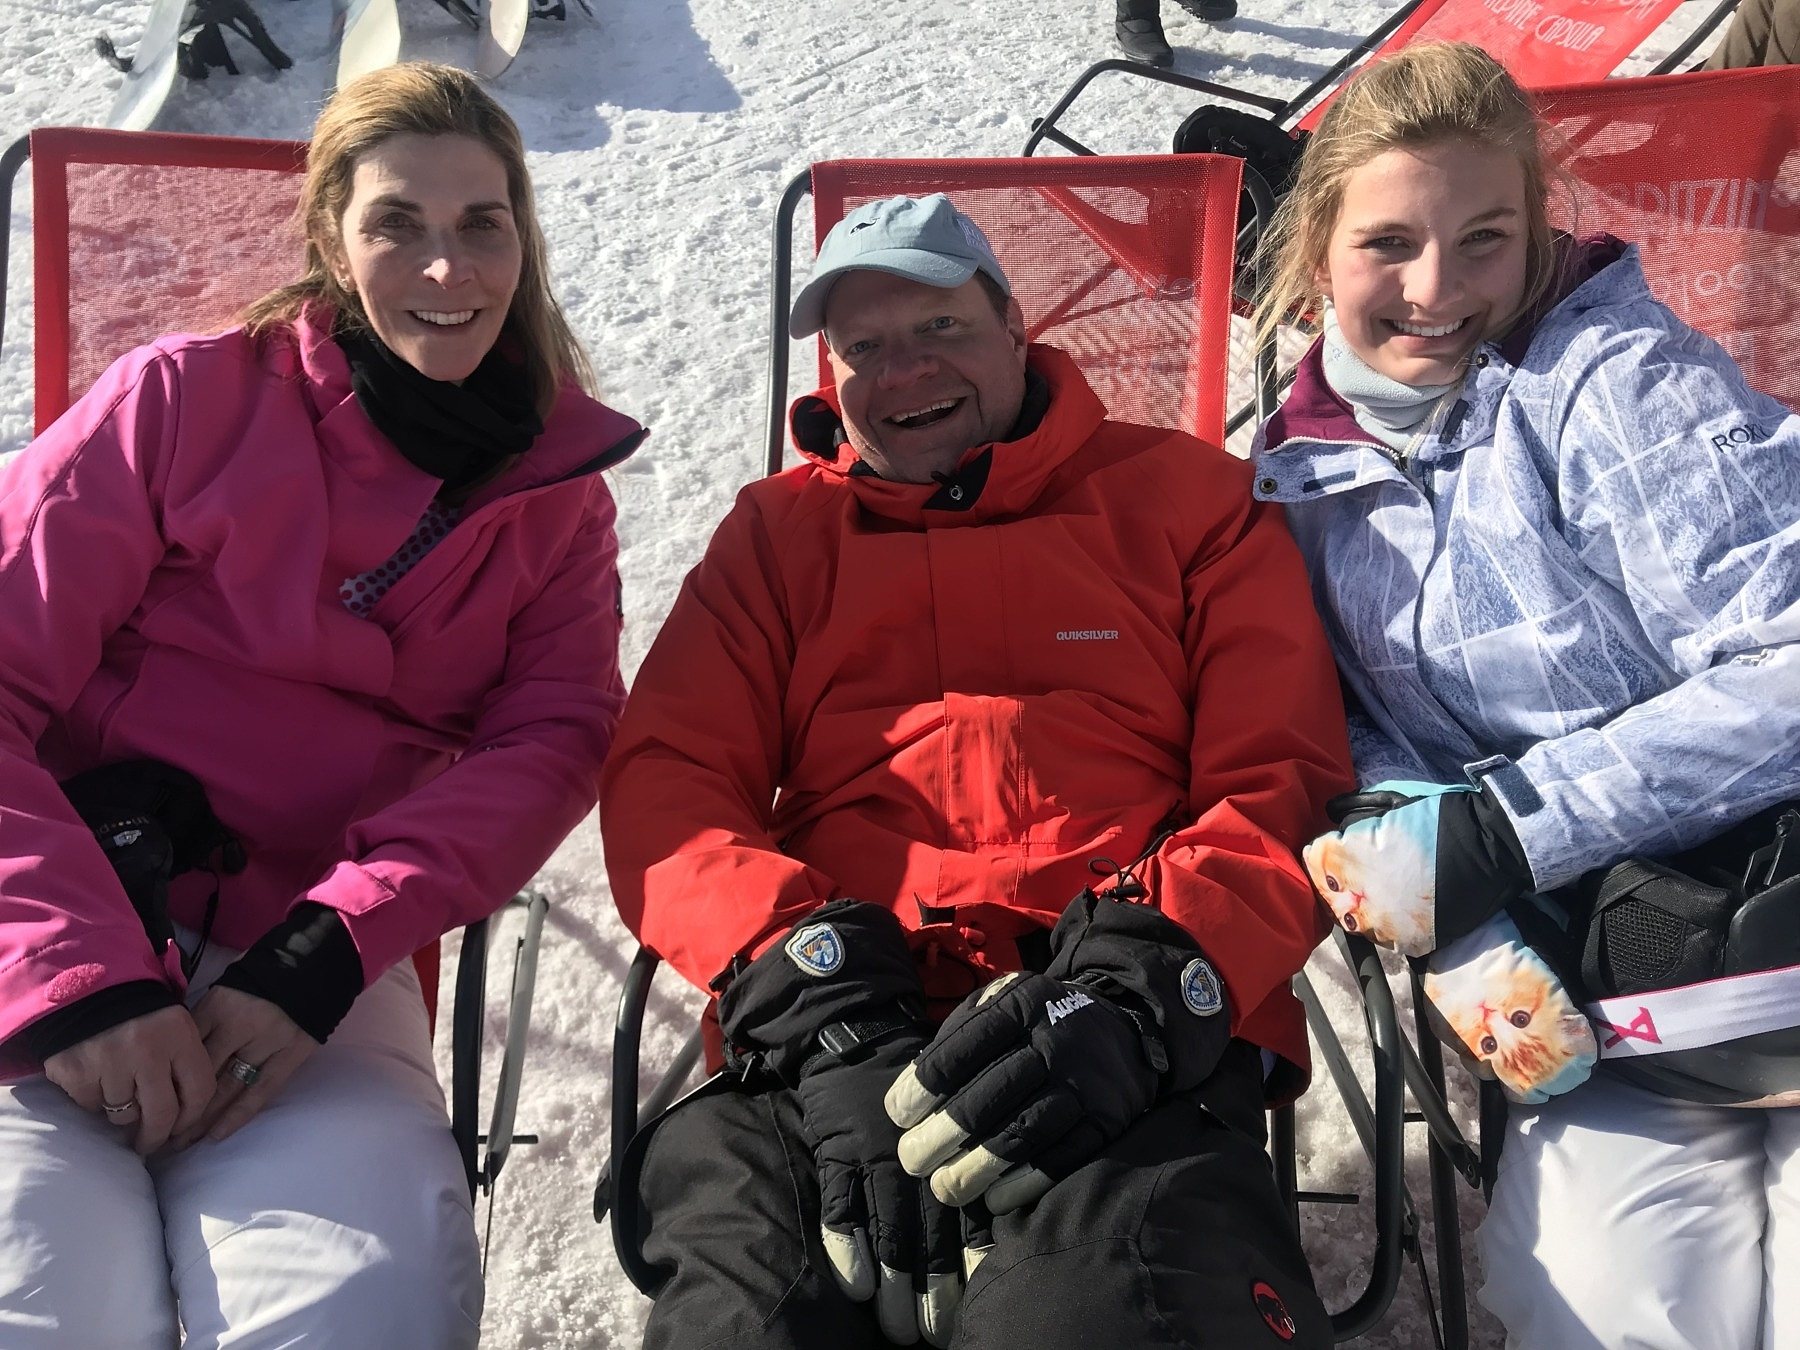 Kimberly Goessele and family on a ski trip